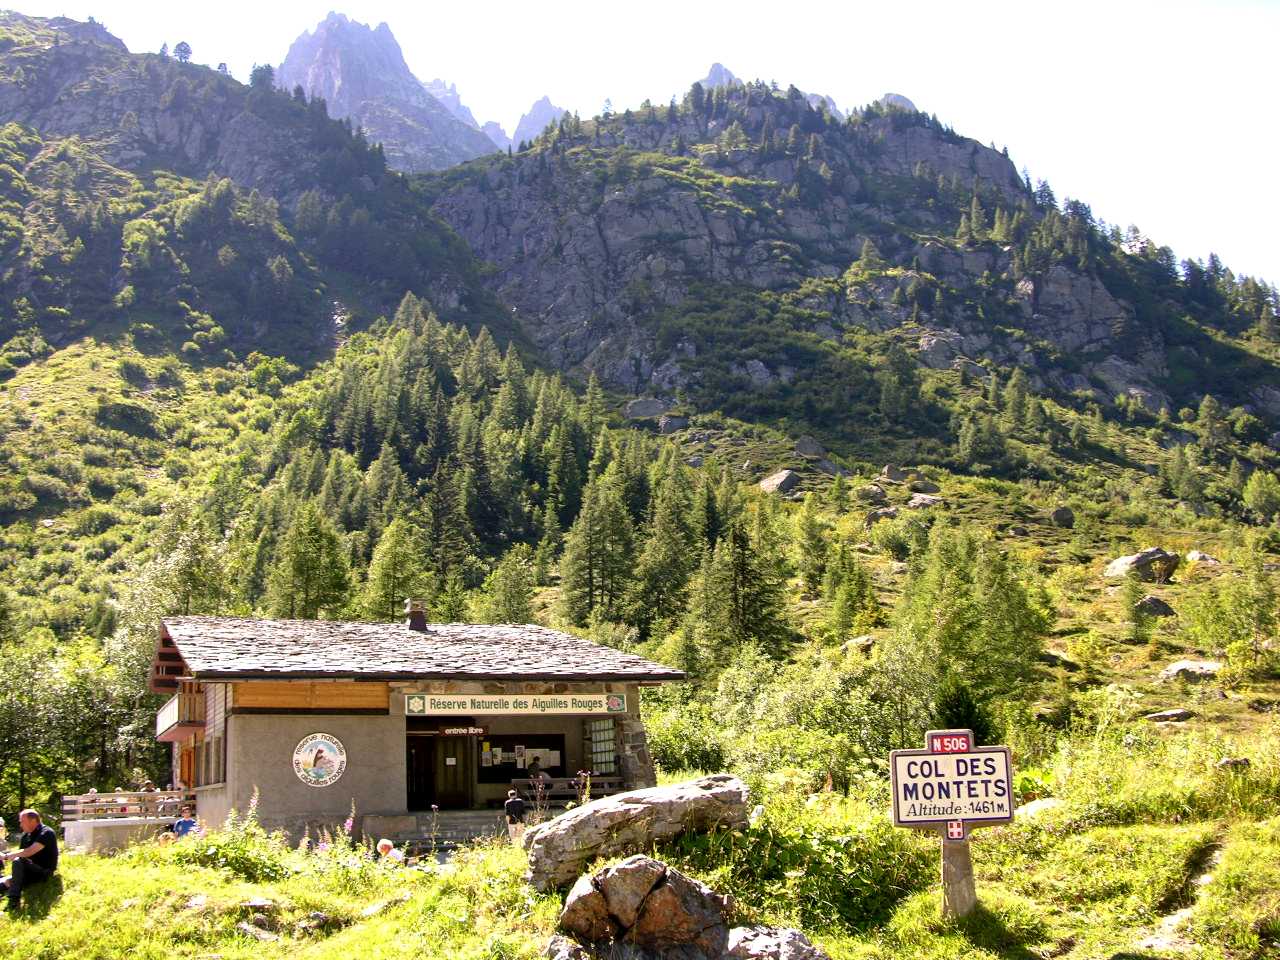 <strong>Châlet daccueil de la Réserve des Aiguilles Rouges<br>Information cabin at the Col des Montets</strong>